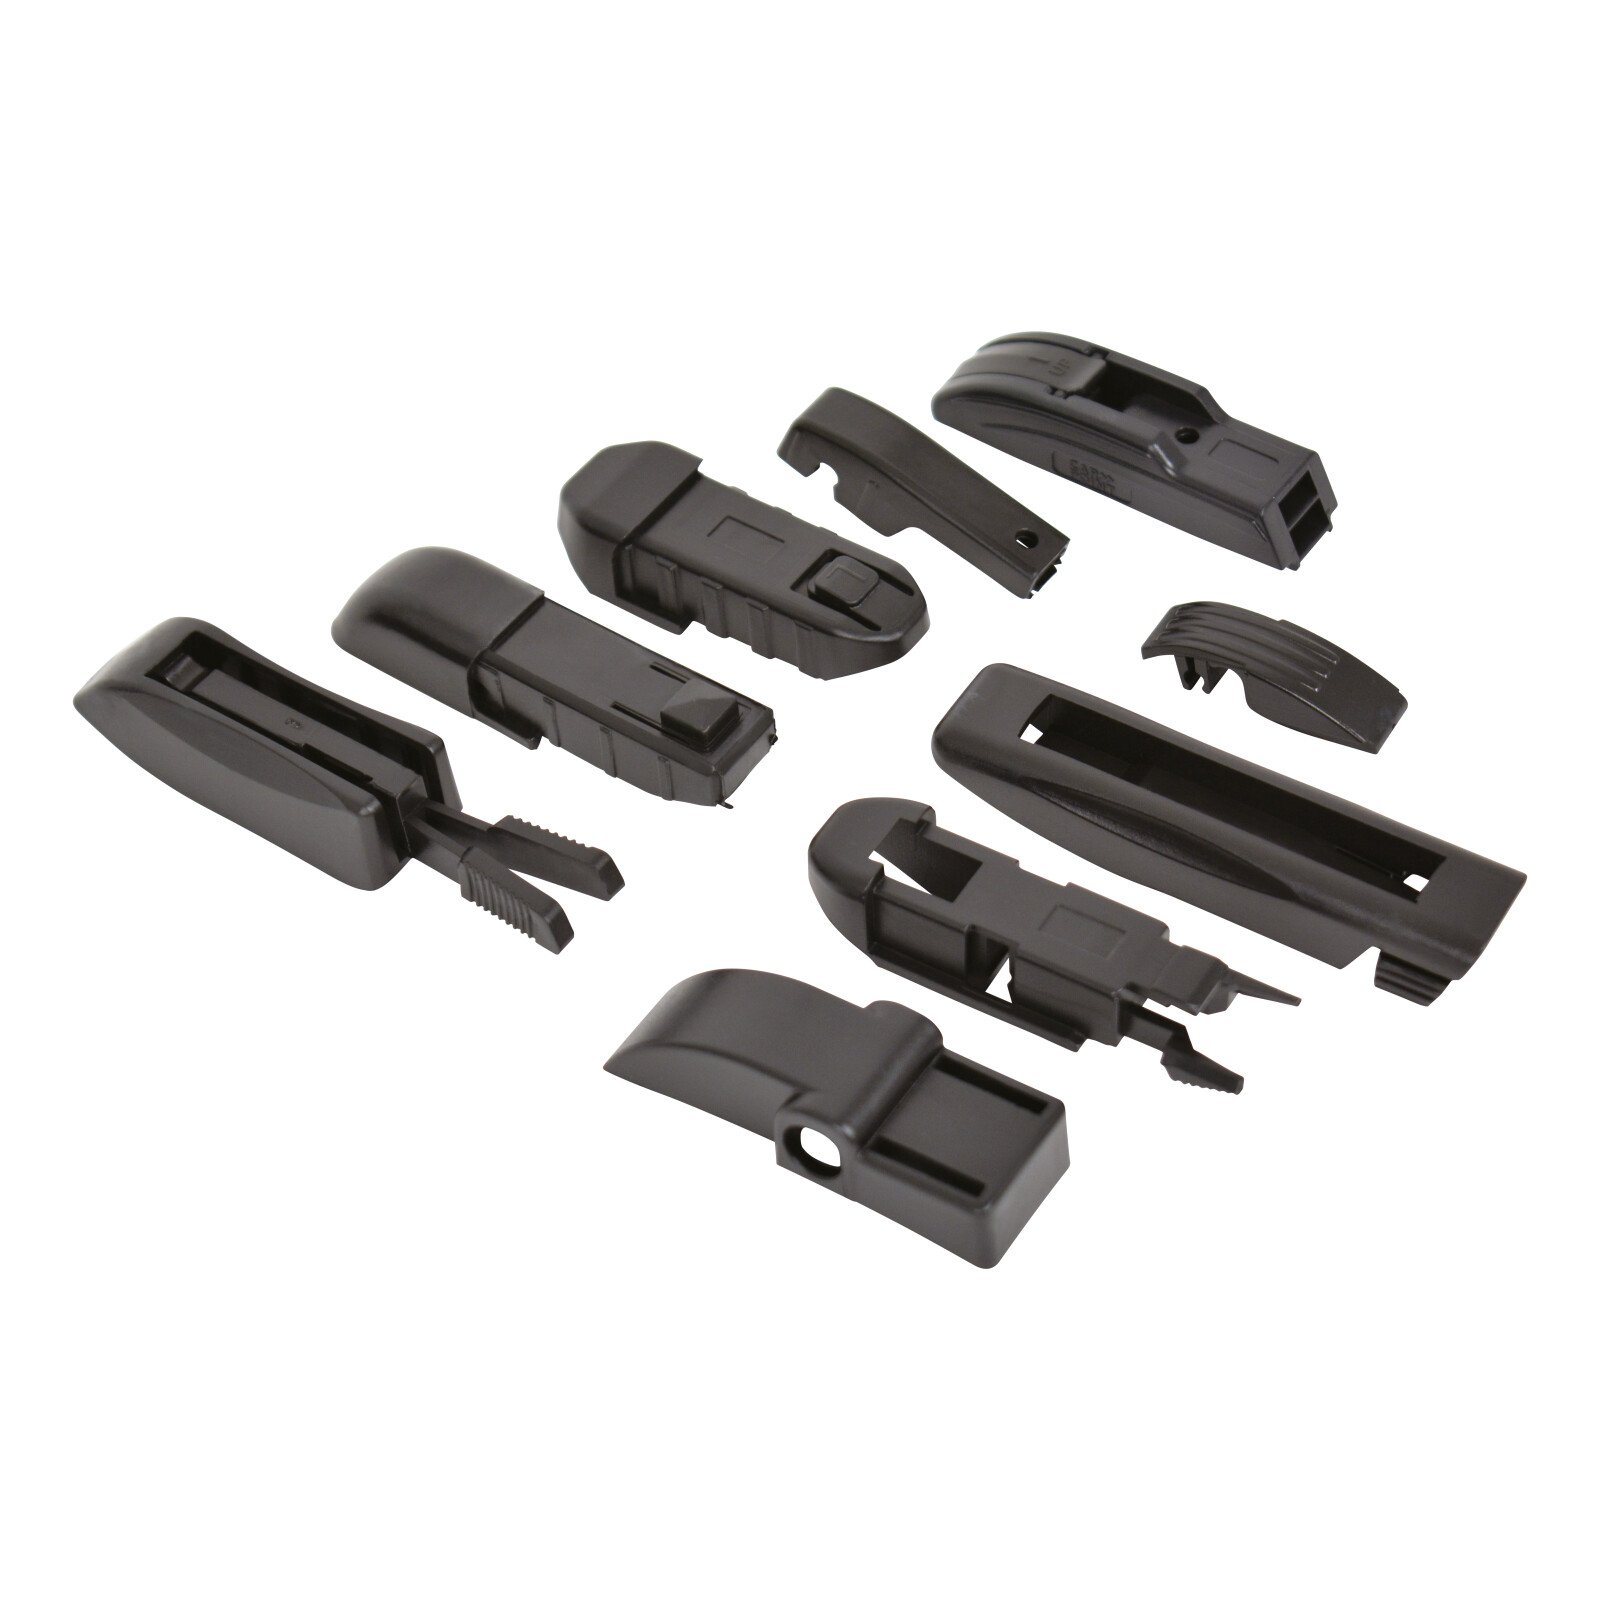 NXT Aero-Comfort wiper blade 9 adaptors 60cm (24“) - 1 pcs thumb